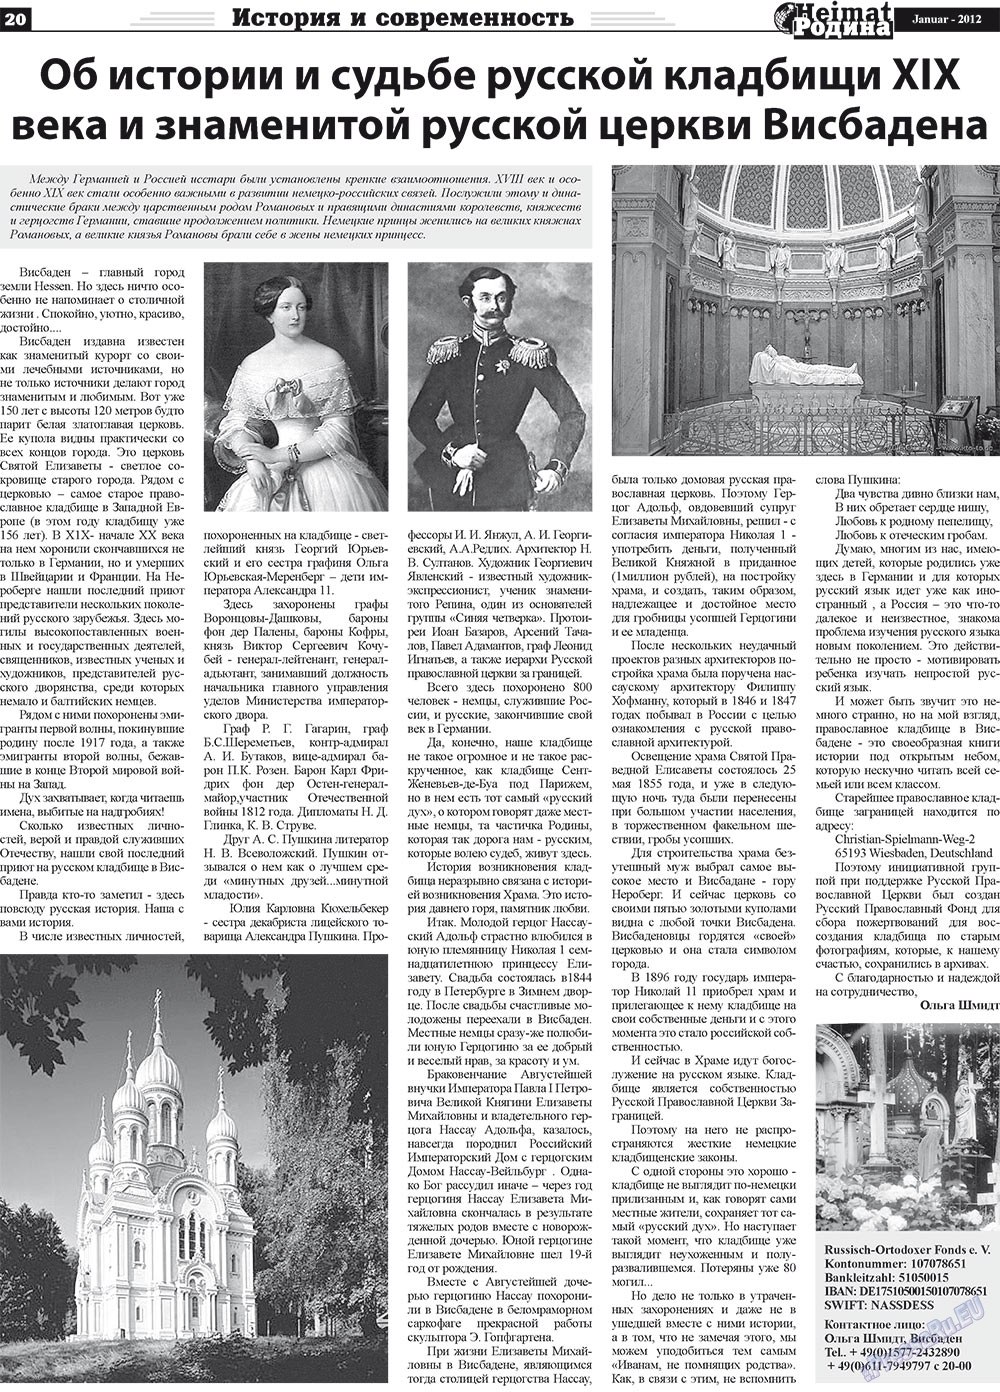 Heimat-Родина (газета). 2012 год, номер 1, стр. 20